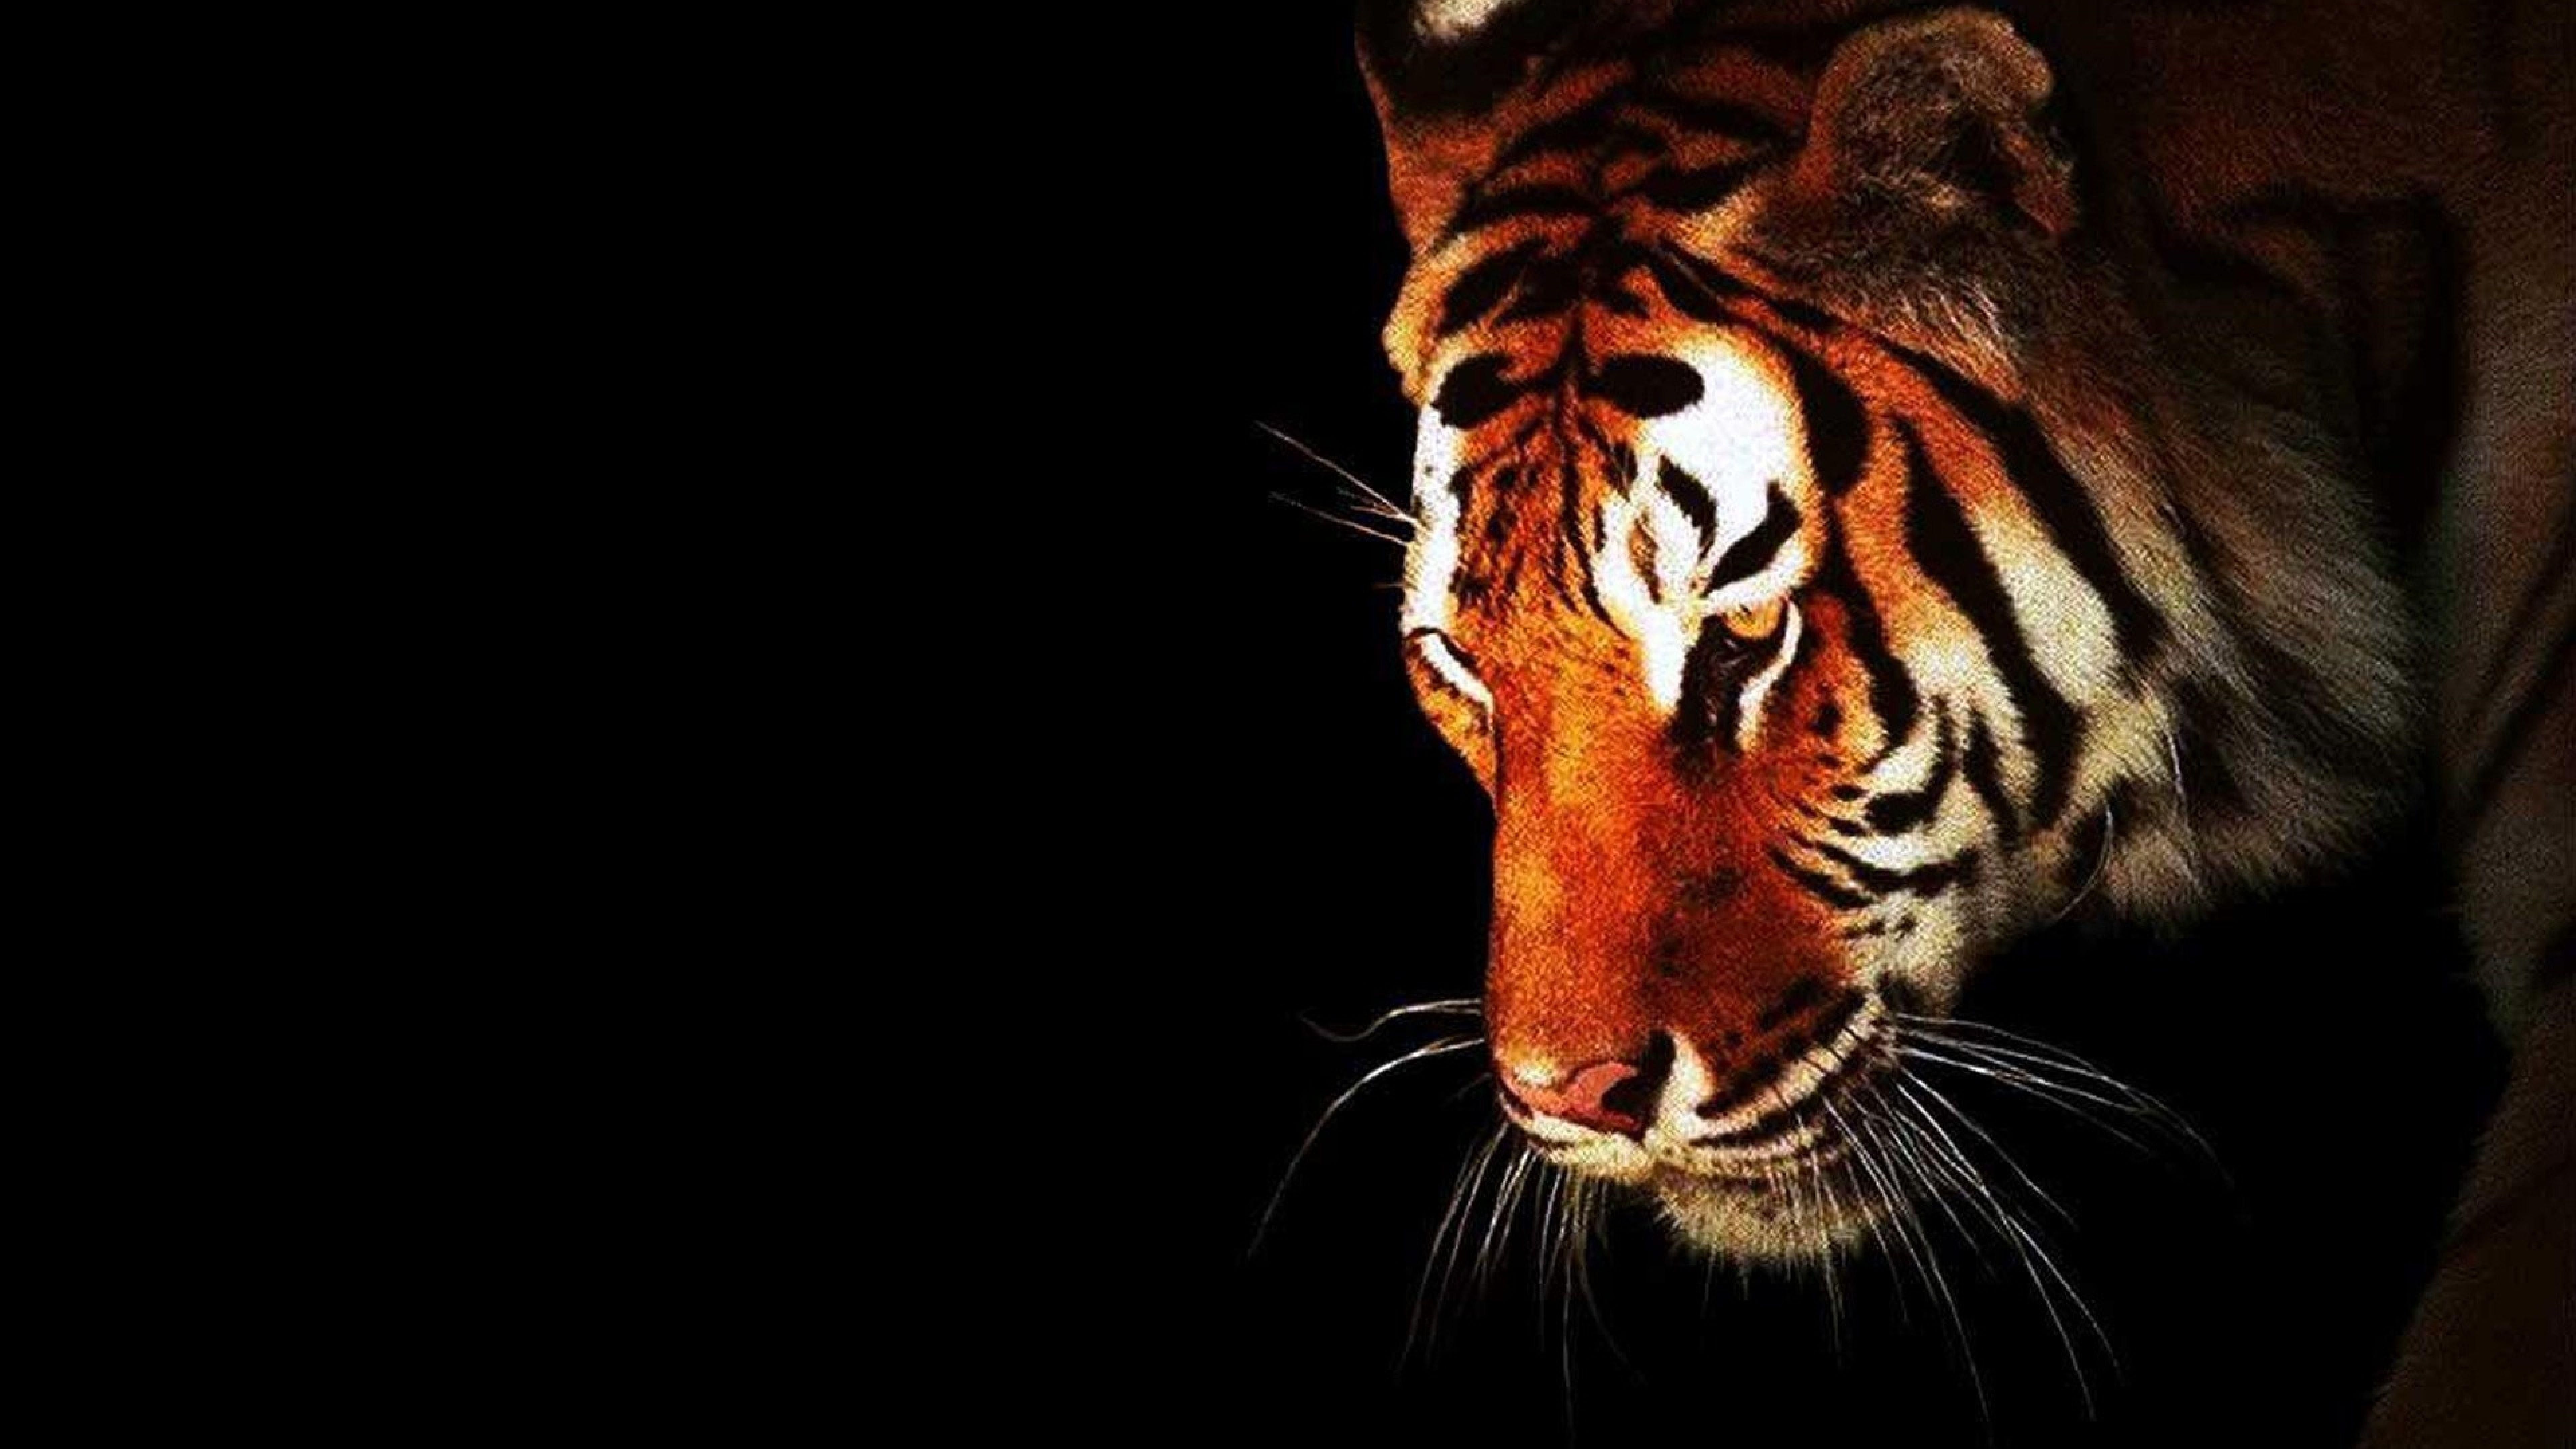 خلفيات النمر مميزة , اجمل صور النمور الملونة , 2021 8K Tiger UHD